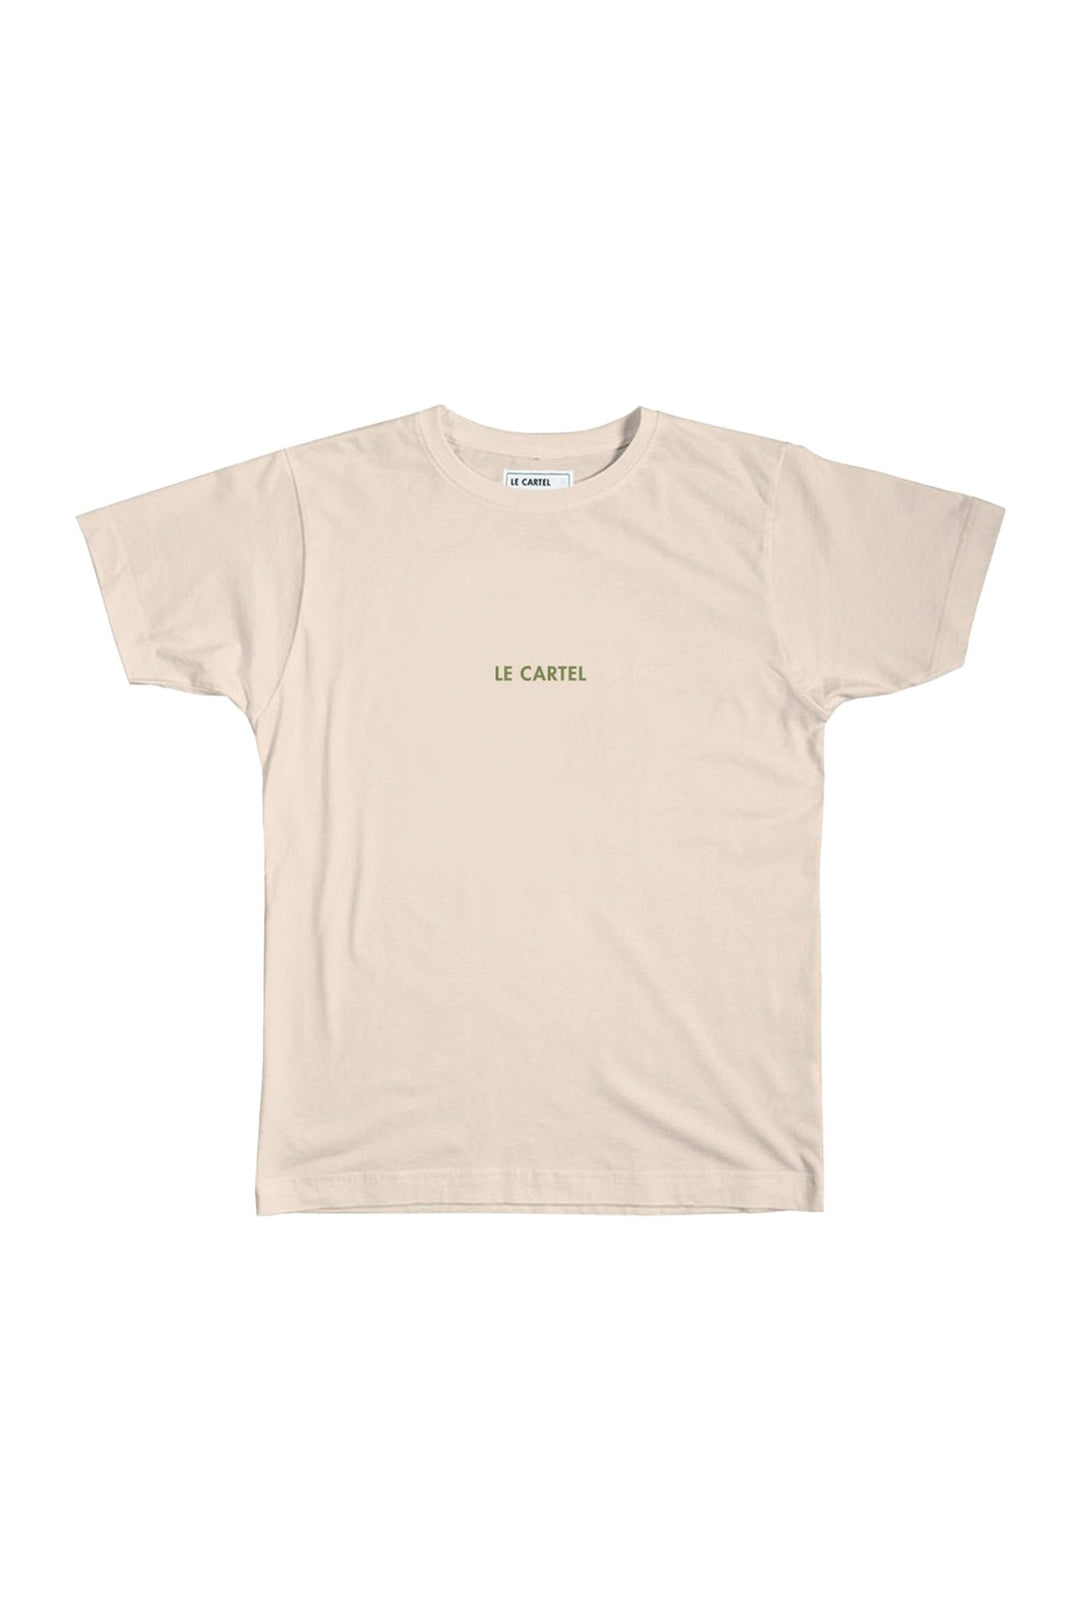 COLLÉ-SERRÉ・T-shirt unisexe・Sable - Le Cartel